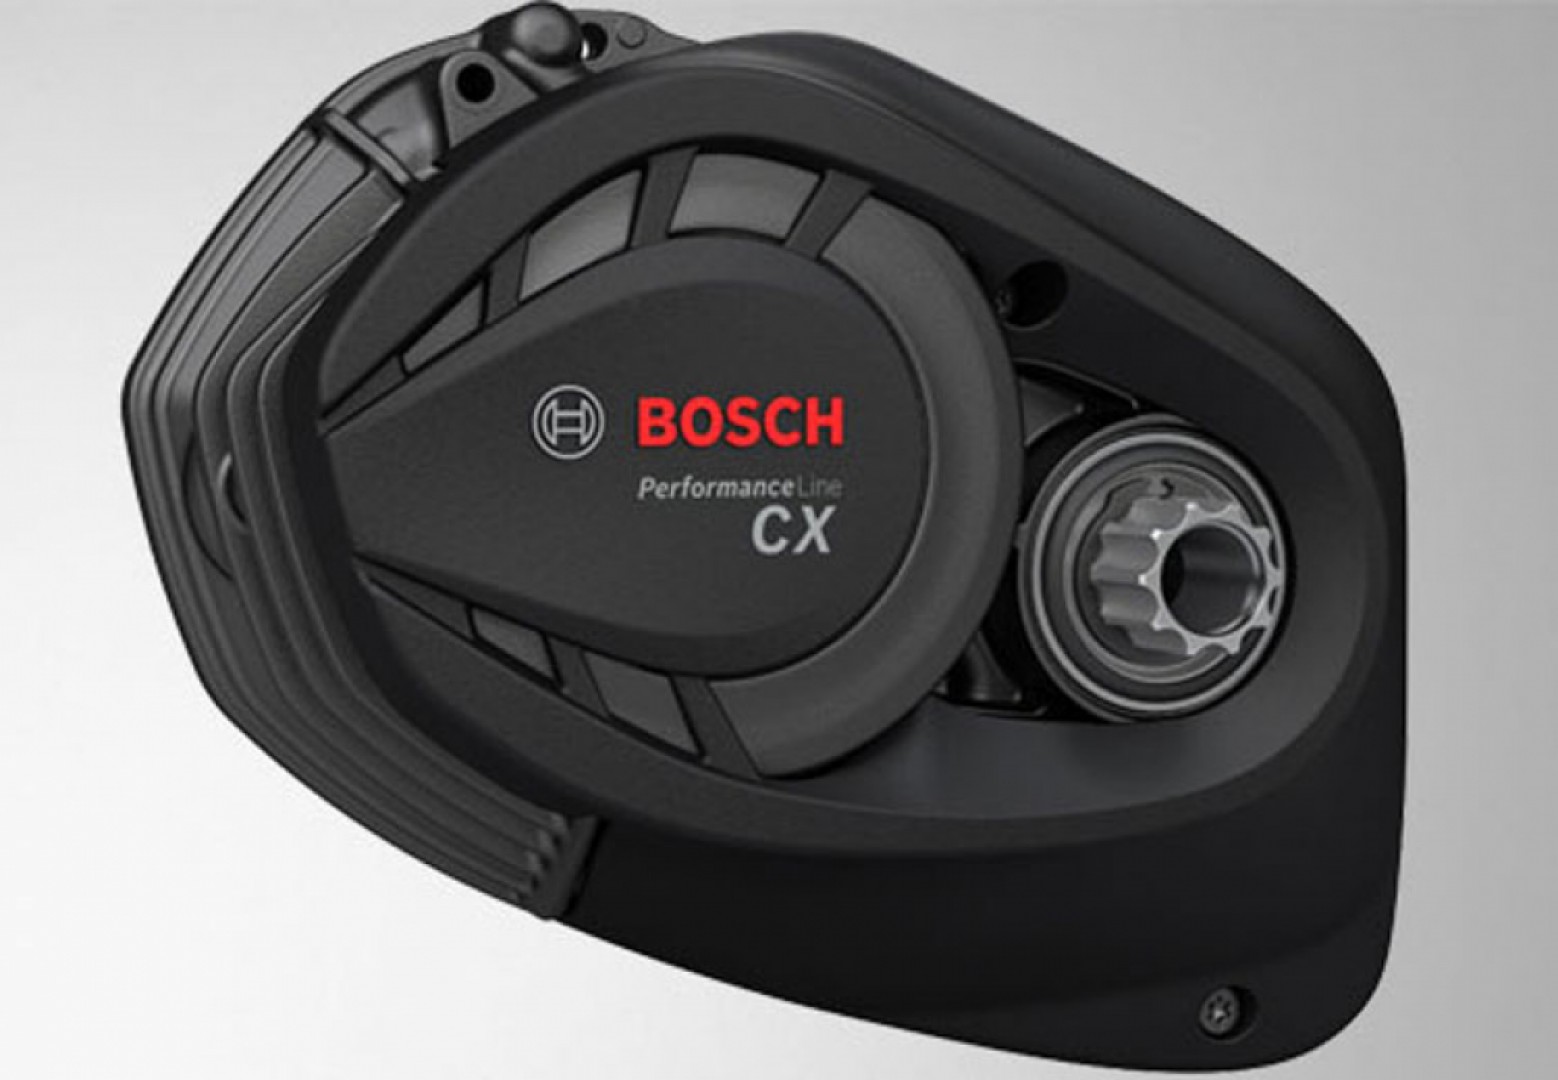 Středový motor Bosch Performance CX 4. generace